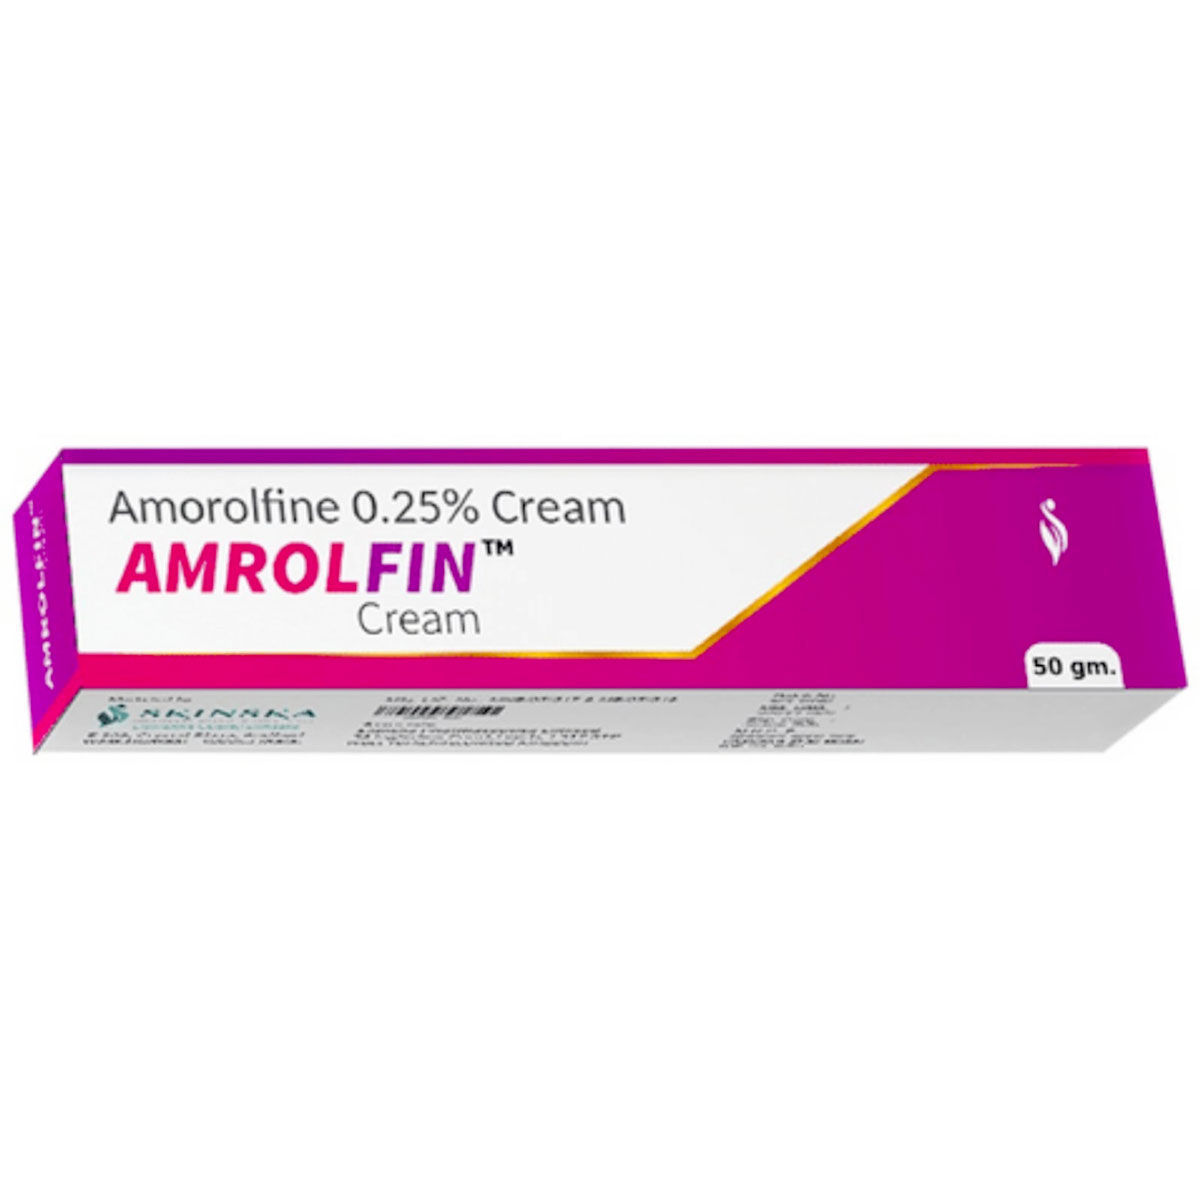 Buy Amrolfin Cream 50 gm Online